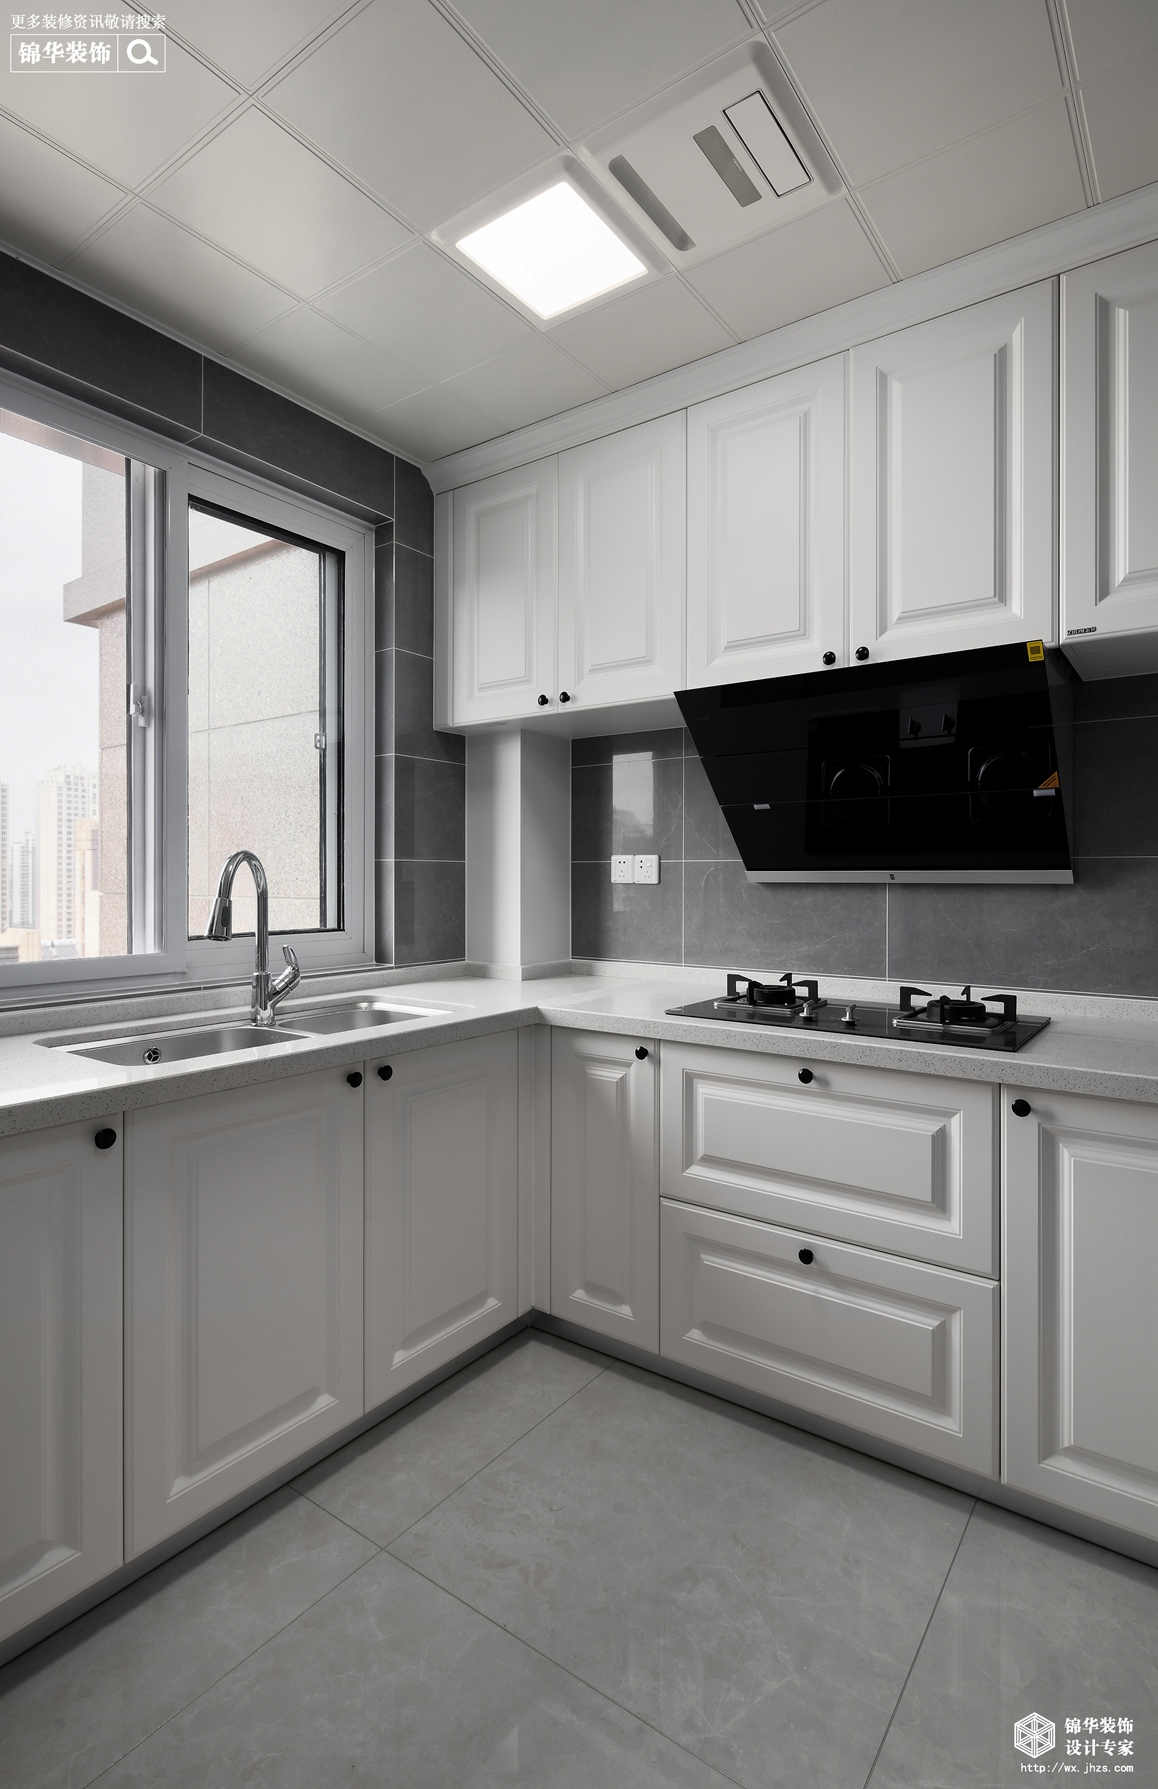 简美风格-瑷颐湾-三室两厅-125平-厨房-装修效果实景图